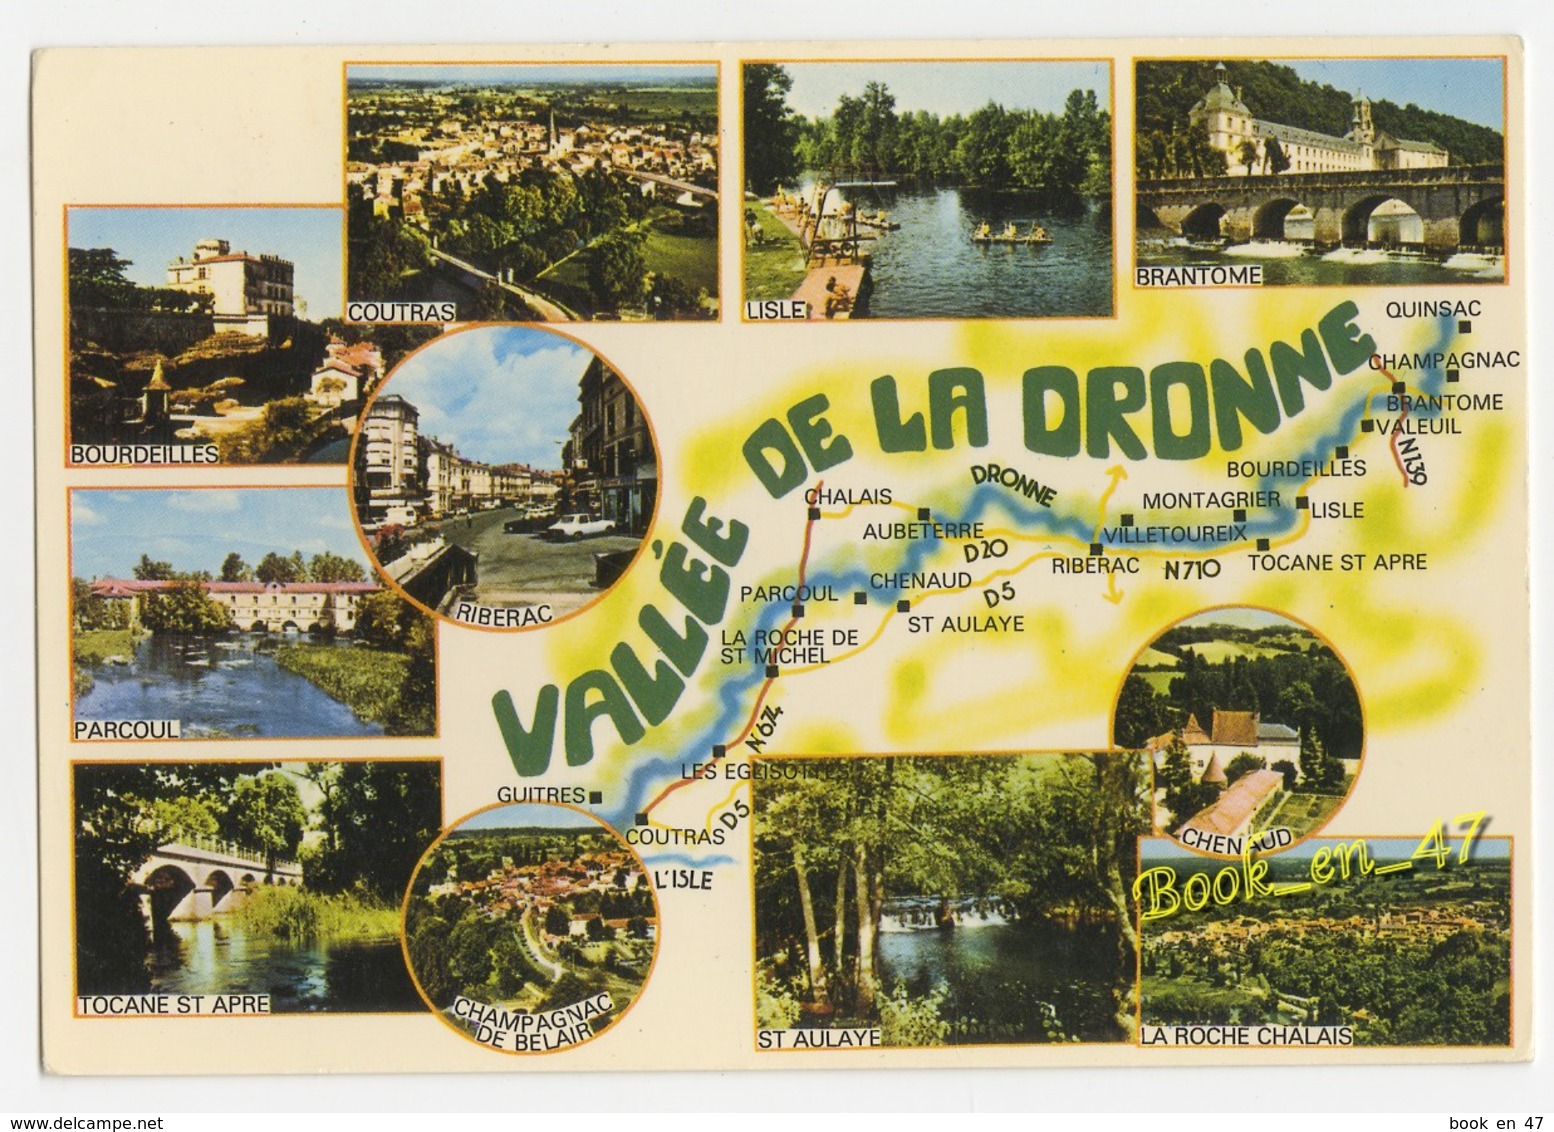 {56628} Vallée De La Dronne , Carte Et Multivues ; Brantome Coutras Bourdeilles Chenaud Lisle Ribérac Parcoul - Cartes Géographiques